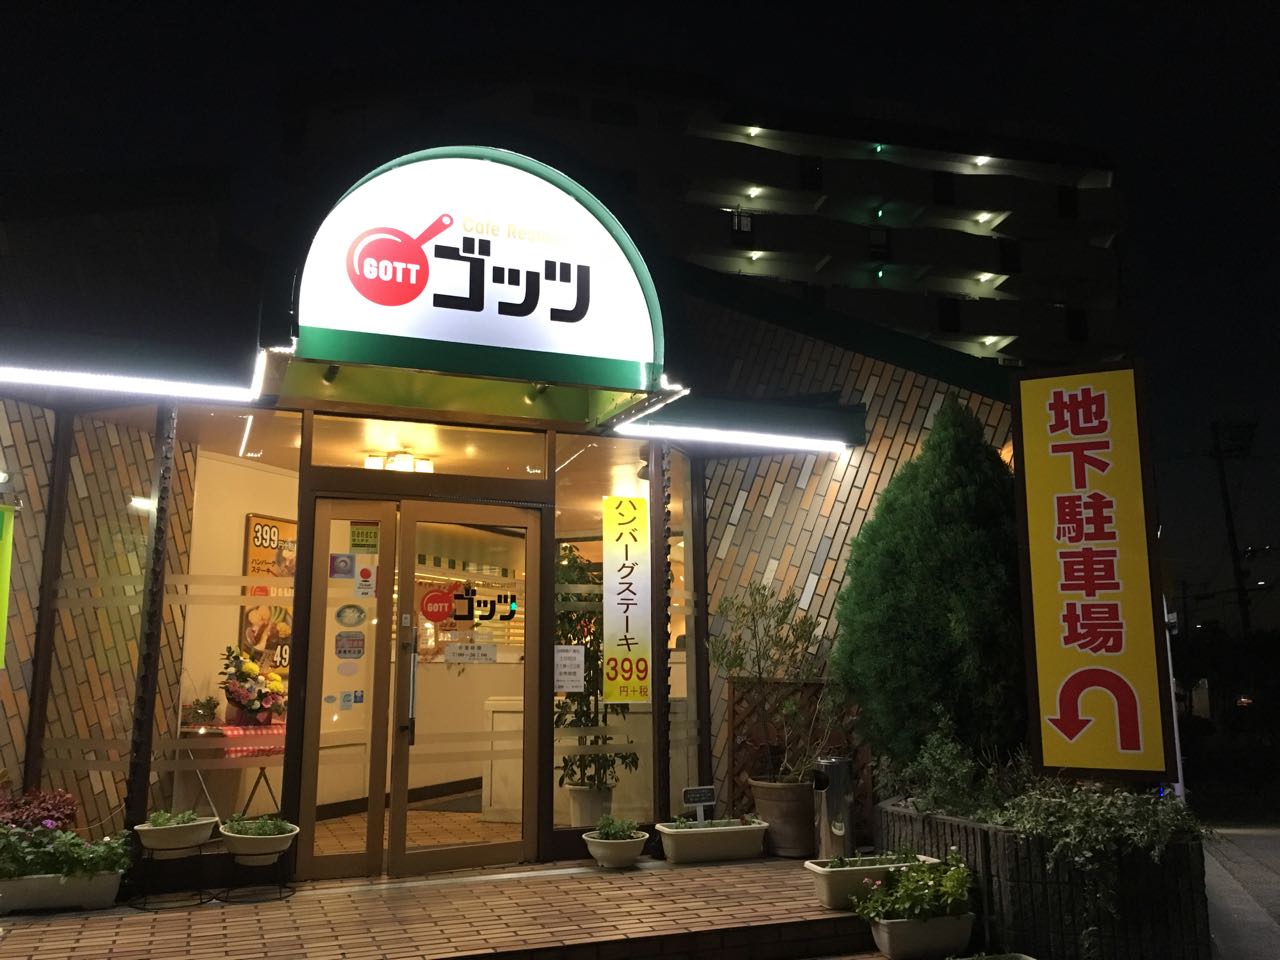 阪大正門からすぐのフレンドリーがゴッツ(GOTT)豊中刀根山店になった！